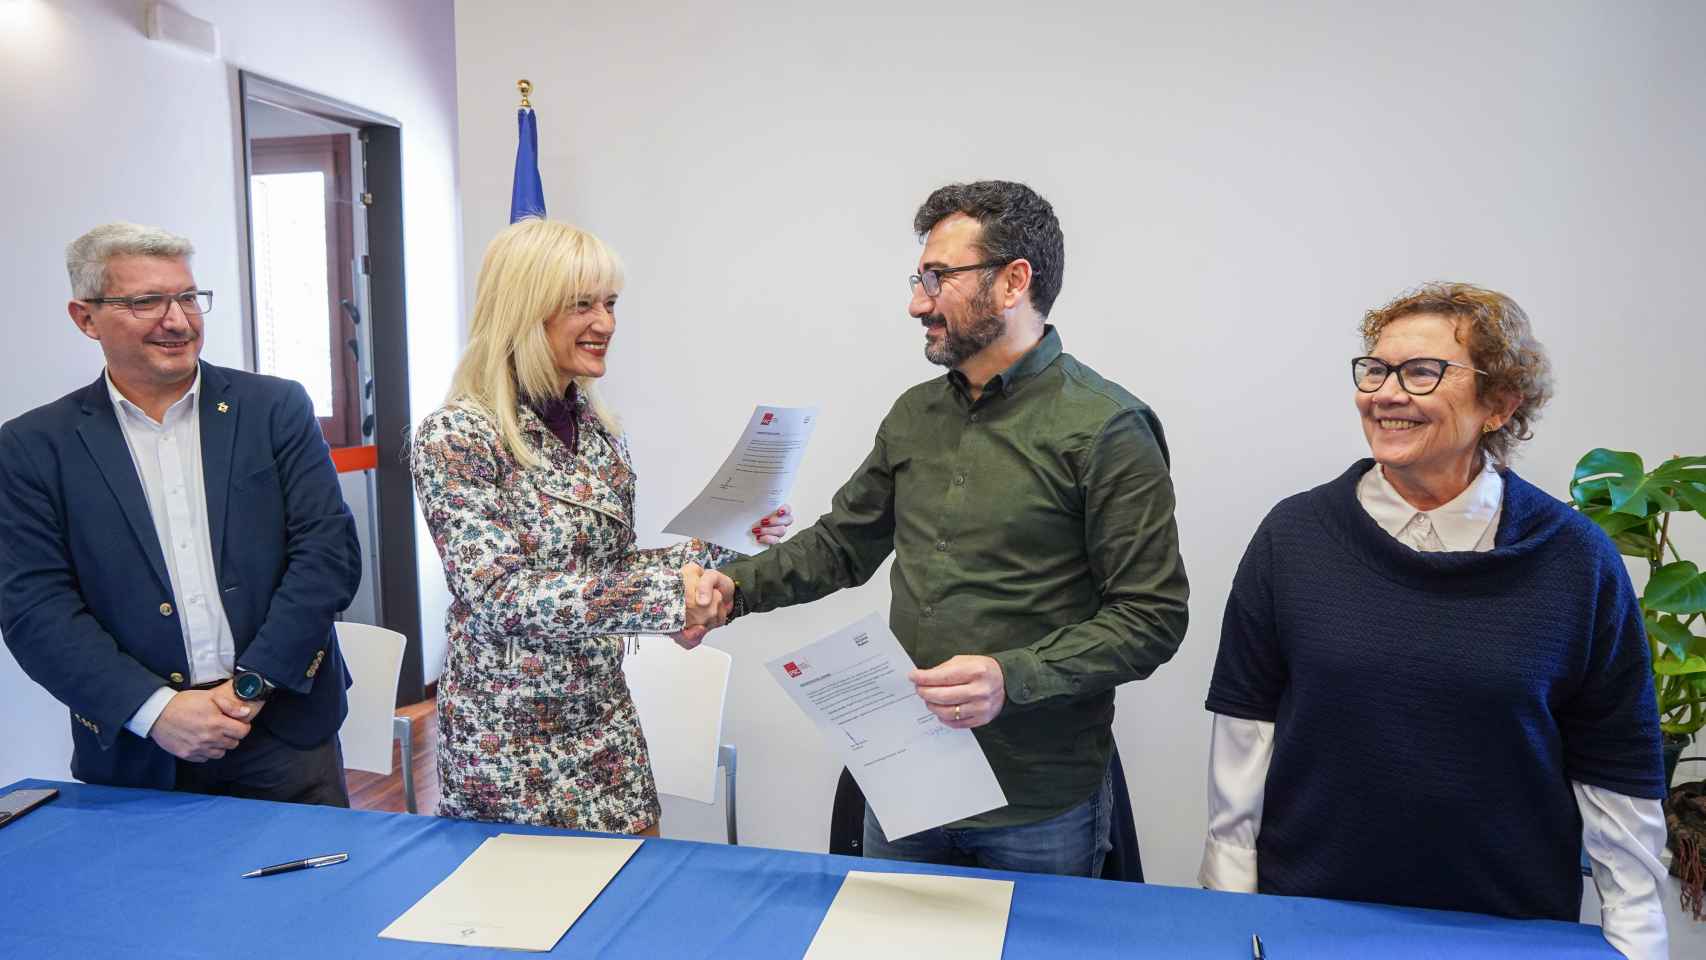 La alcaldesa de Esplugues, Pilar Díaz, junto al líder de los comunes en el municipio, Jordi Pérez, tras firmar un acuerdo de gobierno